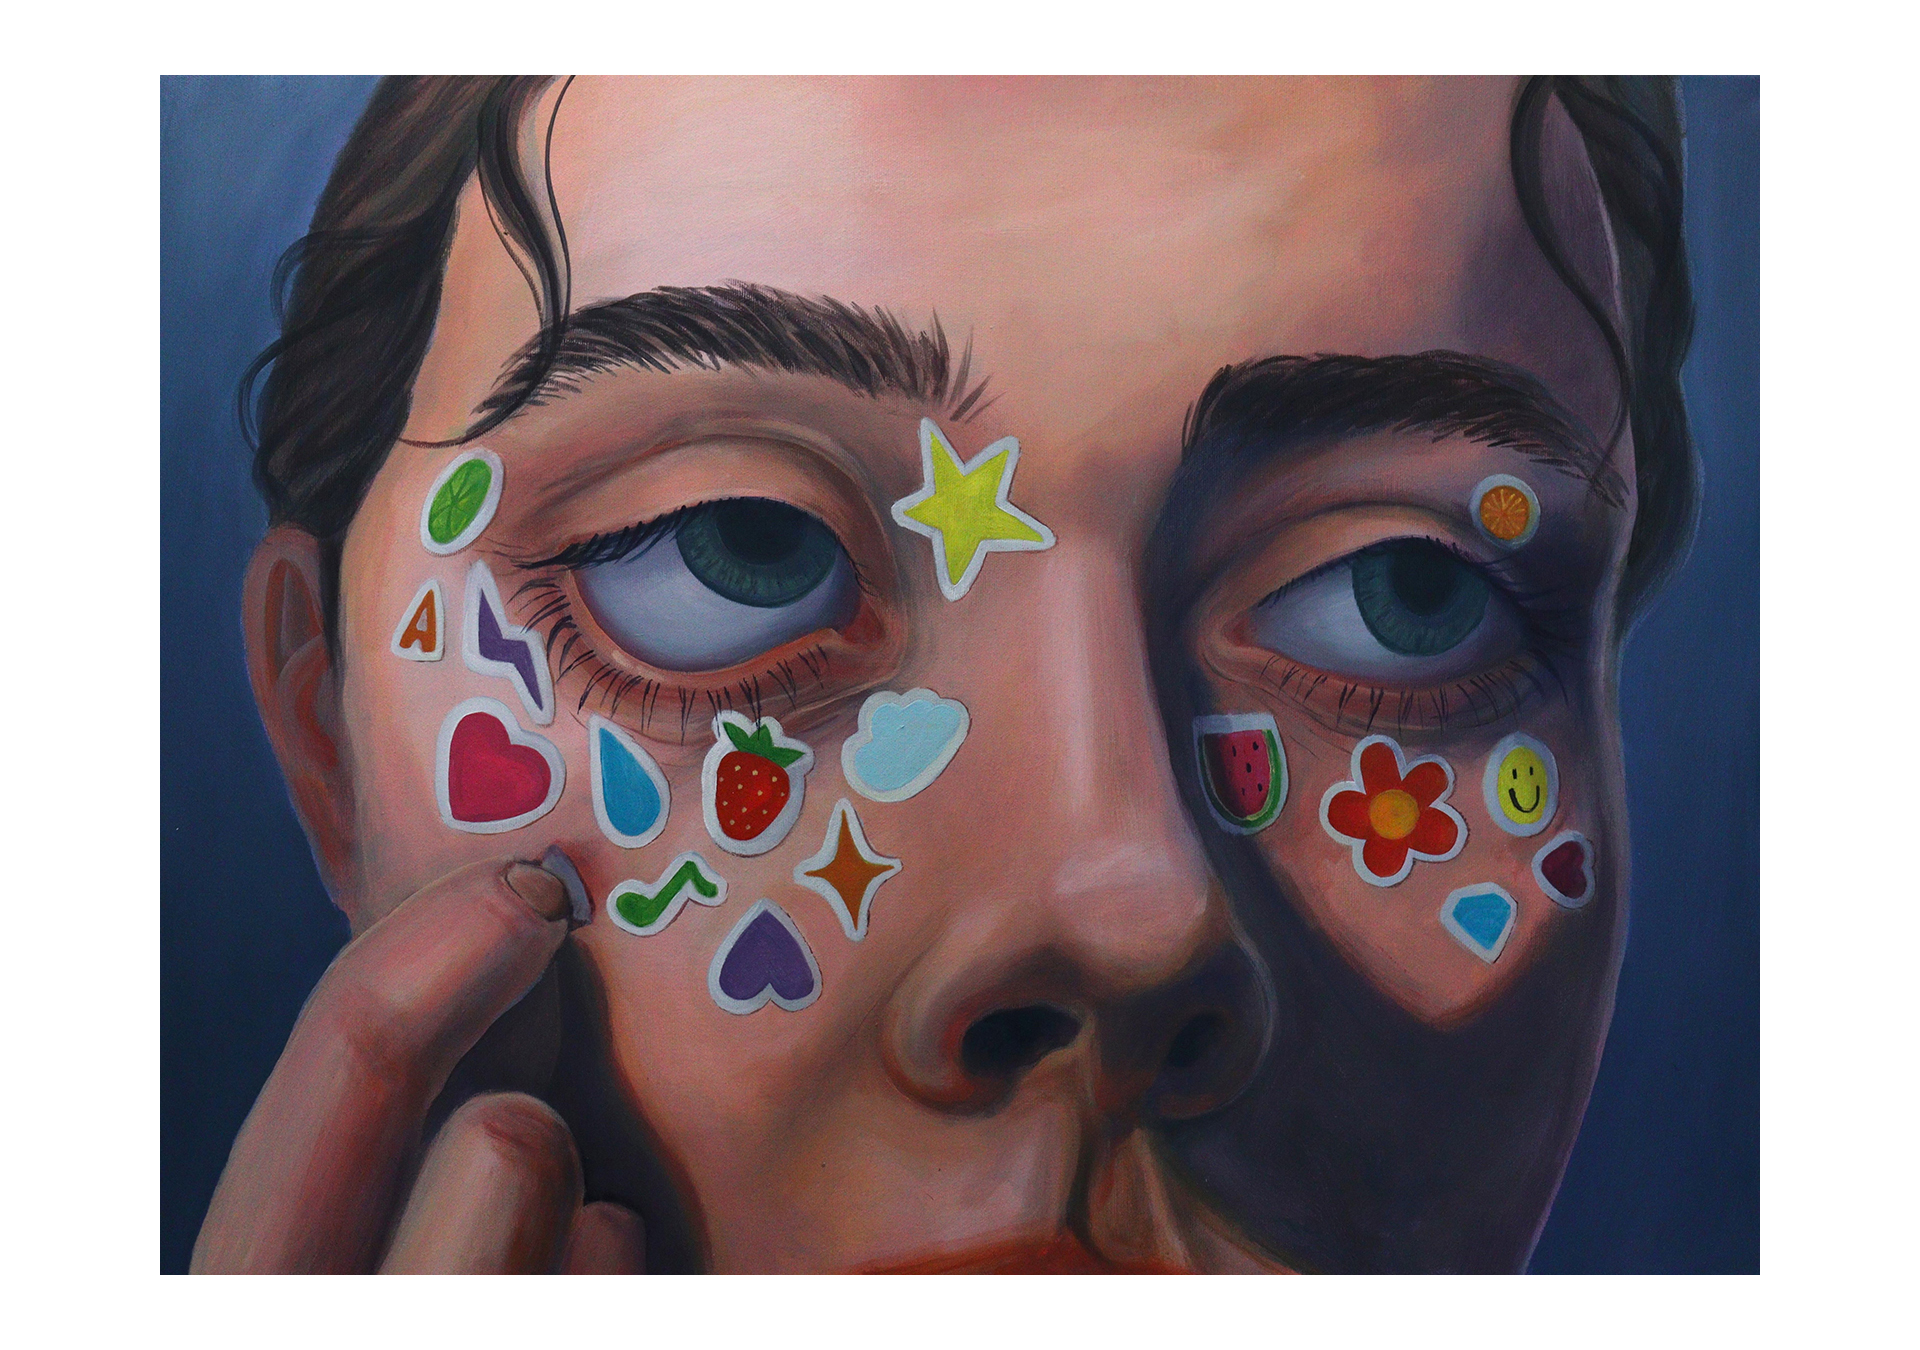 Zdjęcie zawiera portret młodej kobiety z kolorowymi naklejkami wokół oczu. 